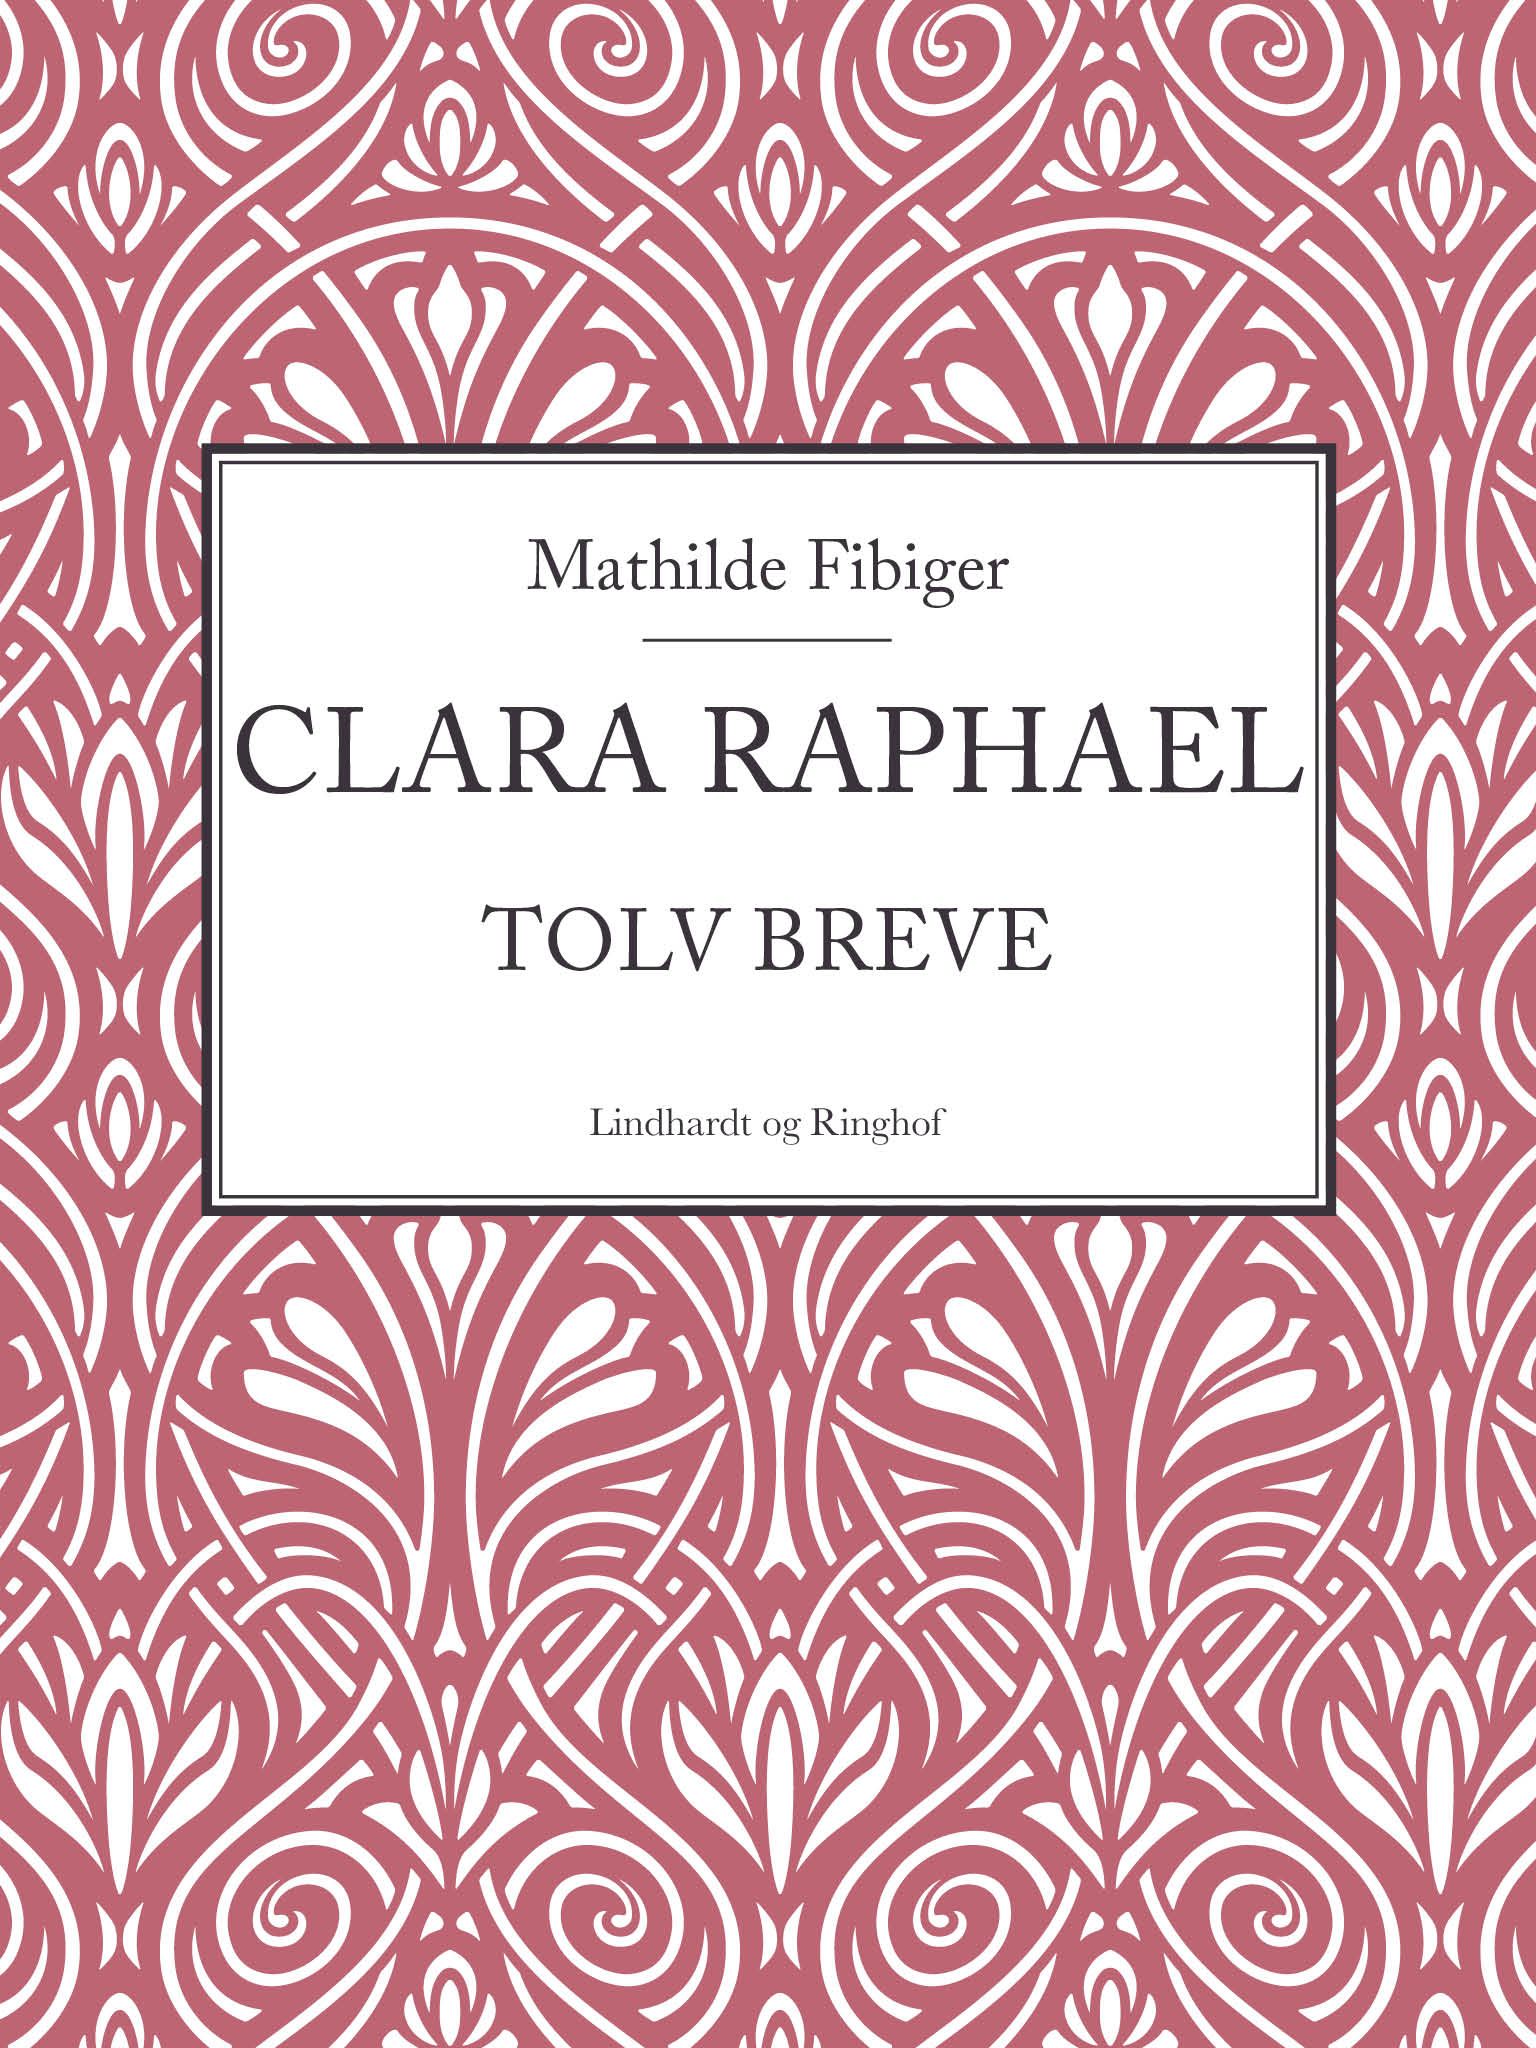 Clara Raphael, e-bok av Mathilde Fibiger